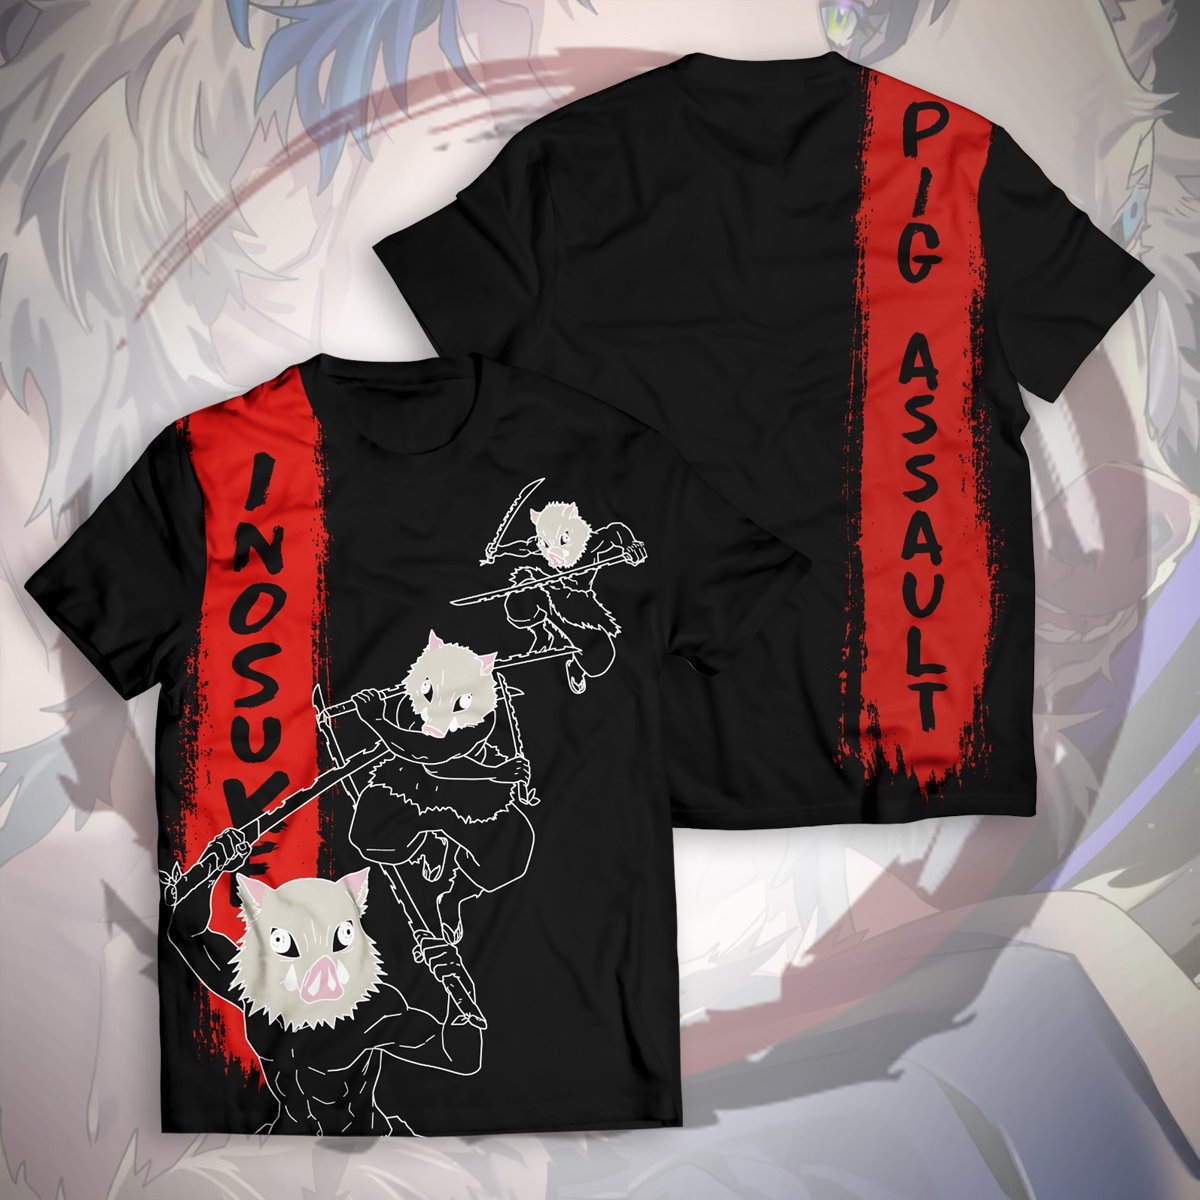 Inosuke Hashibira Unisex T-Shirt Official Demon Slayer Merch